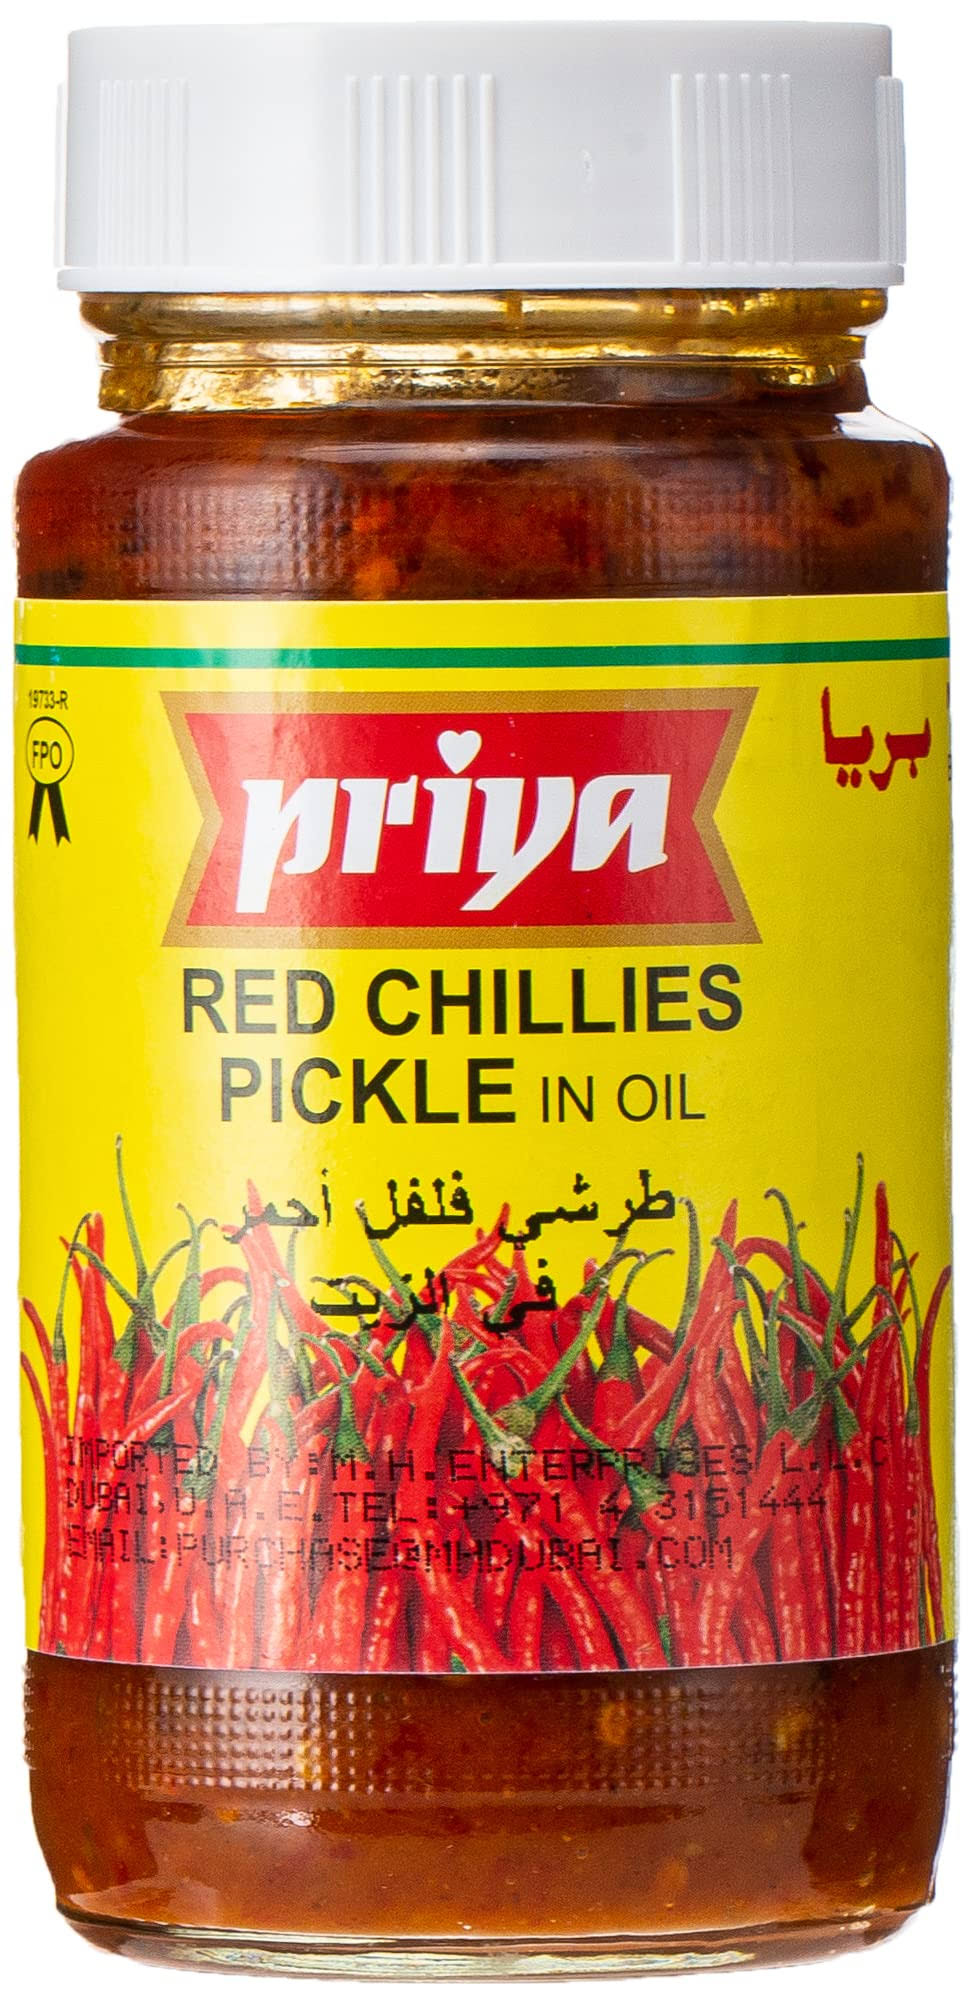 Priya Red Chilli Pickle with Garlic 300g